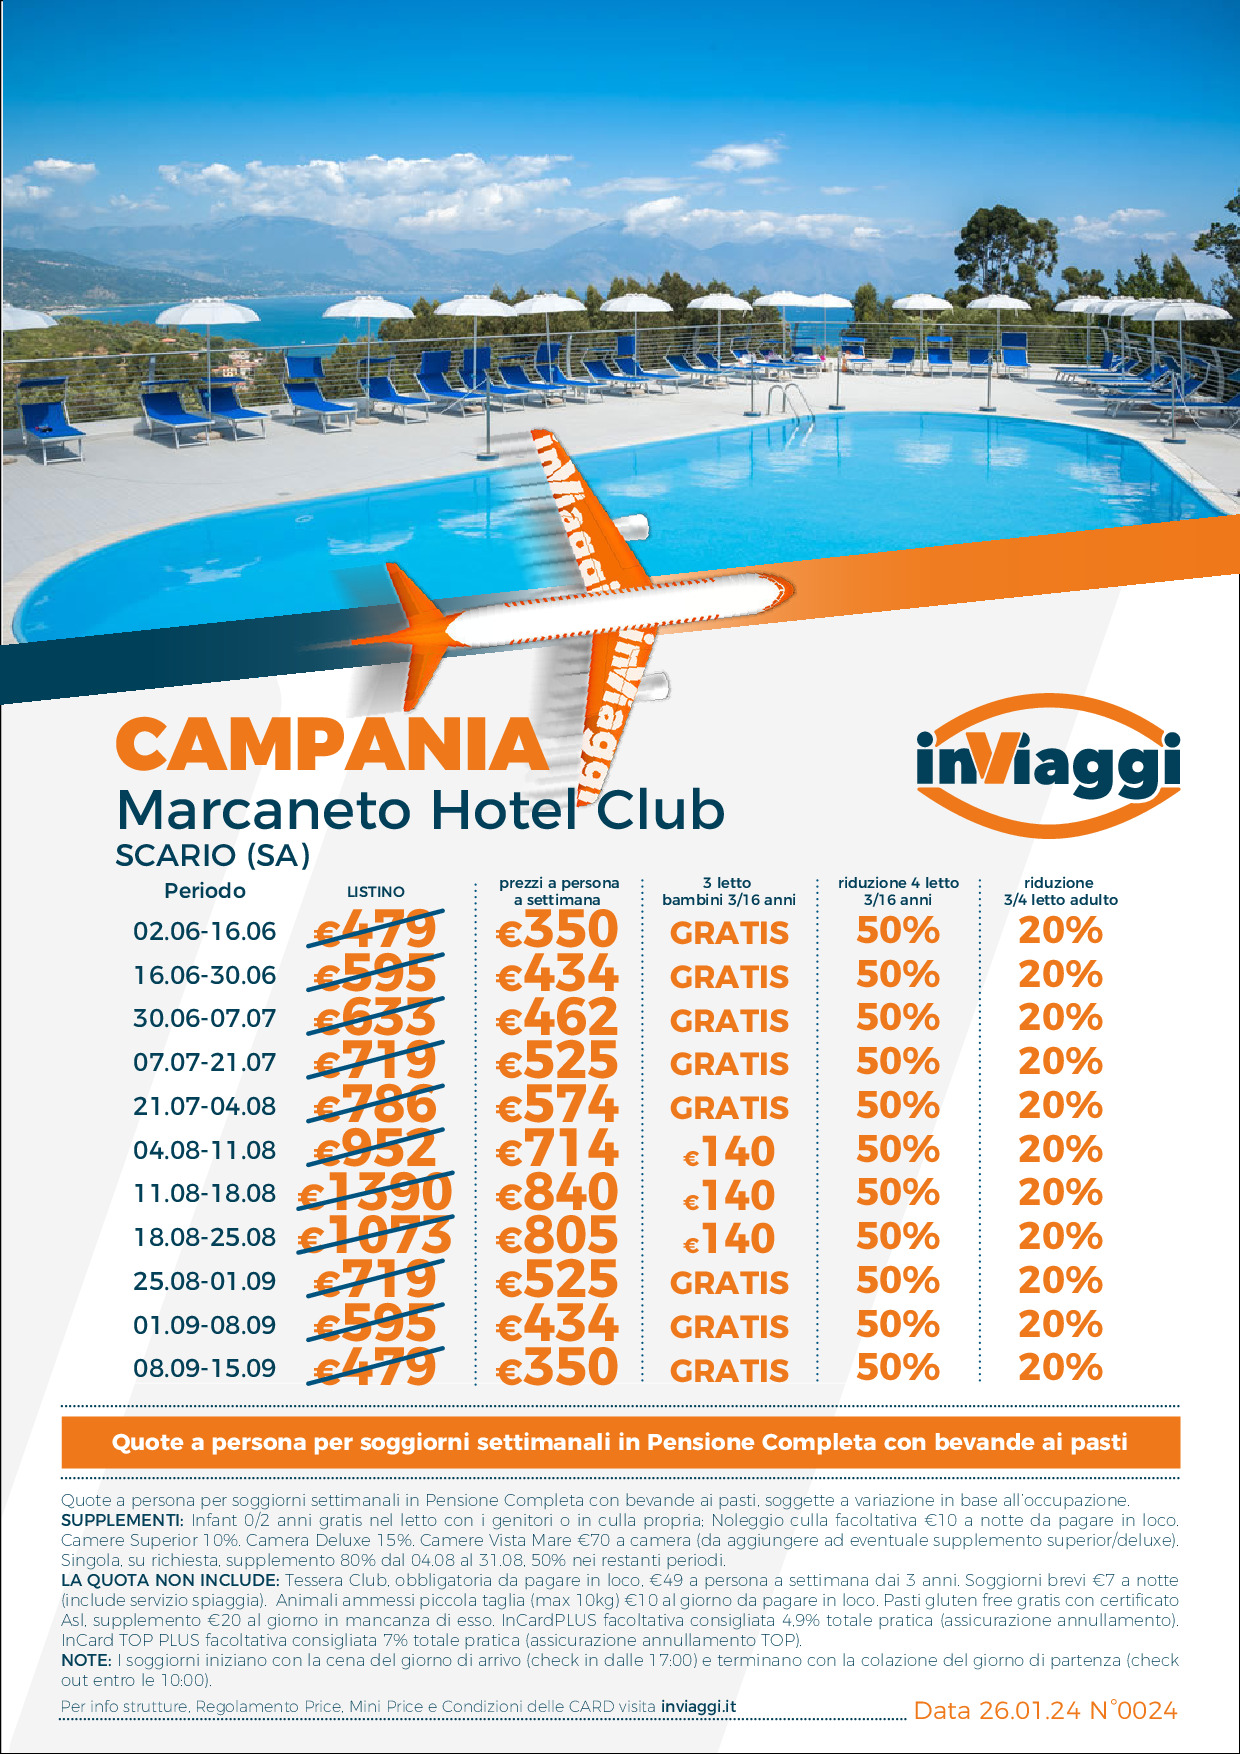 Marcaneto Hotel Club - Scario